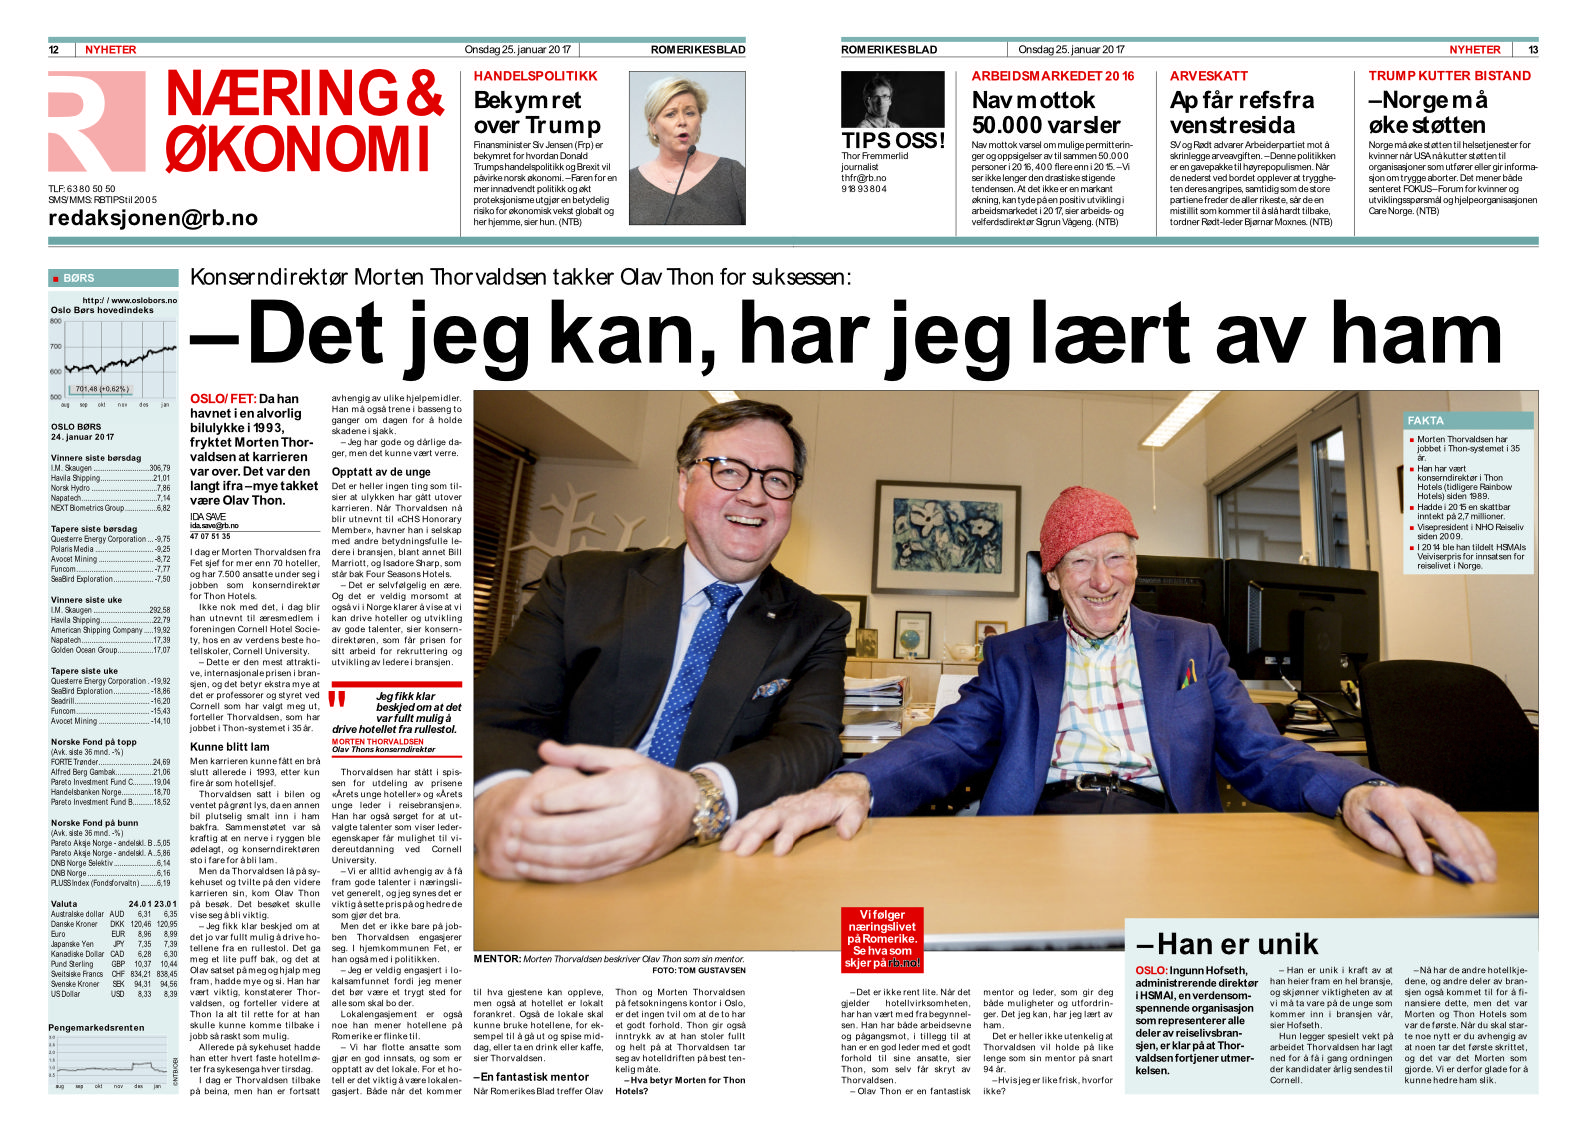 RB-intervjuet med Morten Thorvaldsen og Olav Thon. Klikk på bildet for leselig gjengivelse.